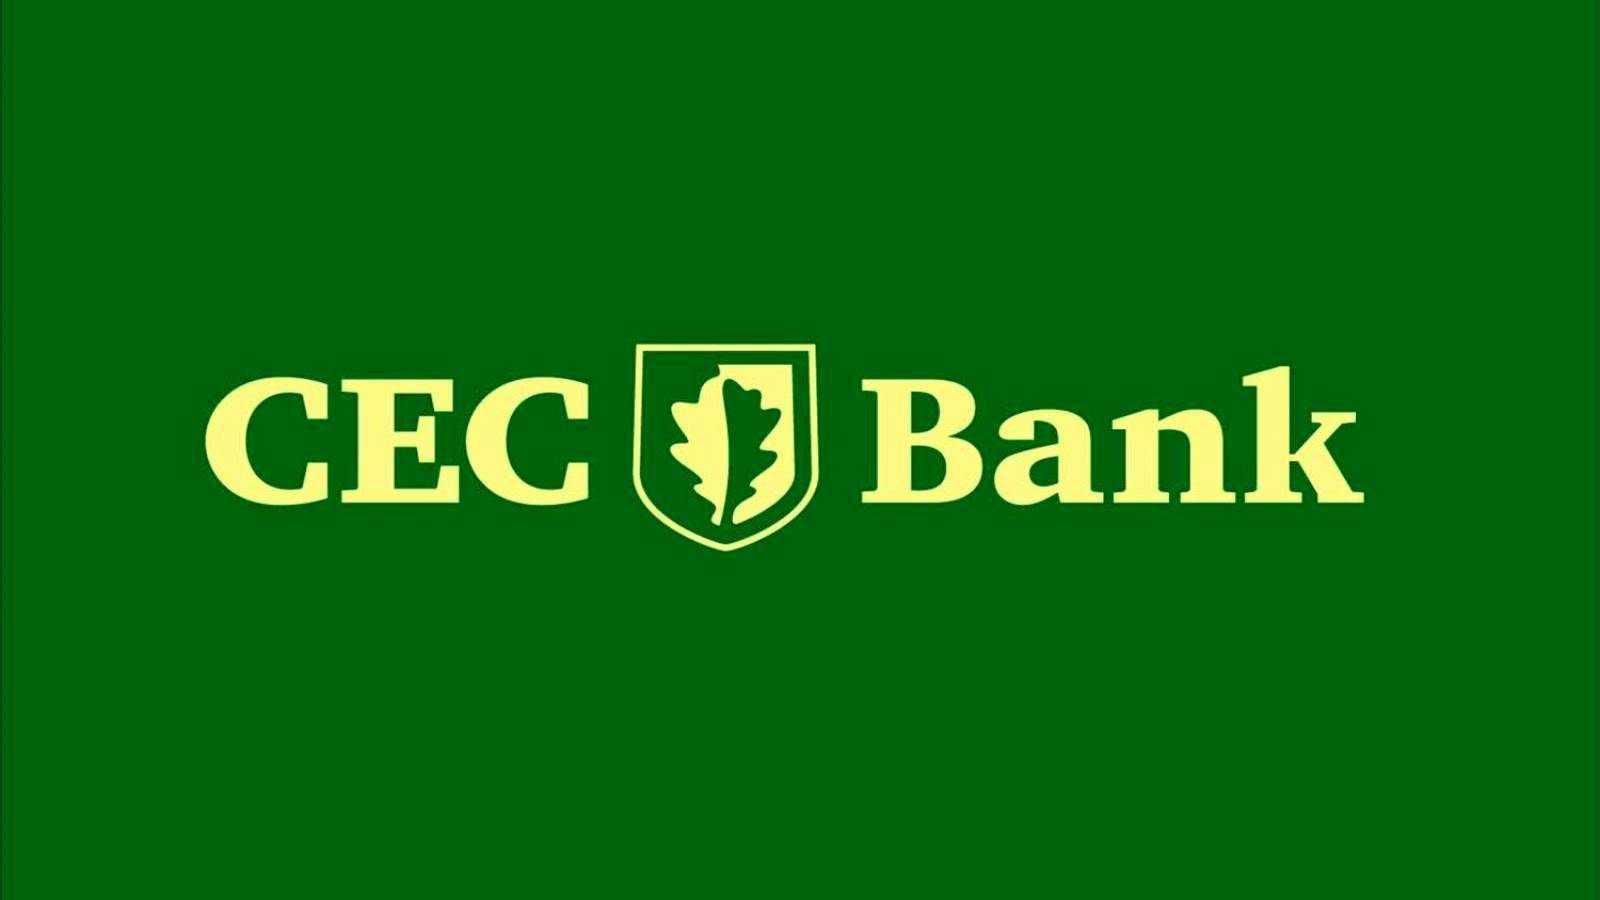 Die CEC Bank warnt Kunden vor der Gefahr von Phishing-Angriffen auf Geldkonten